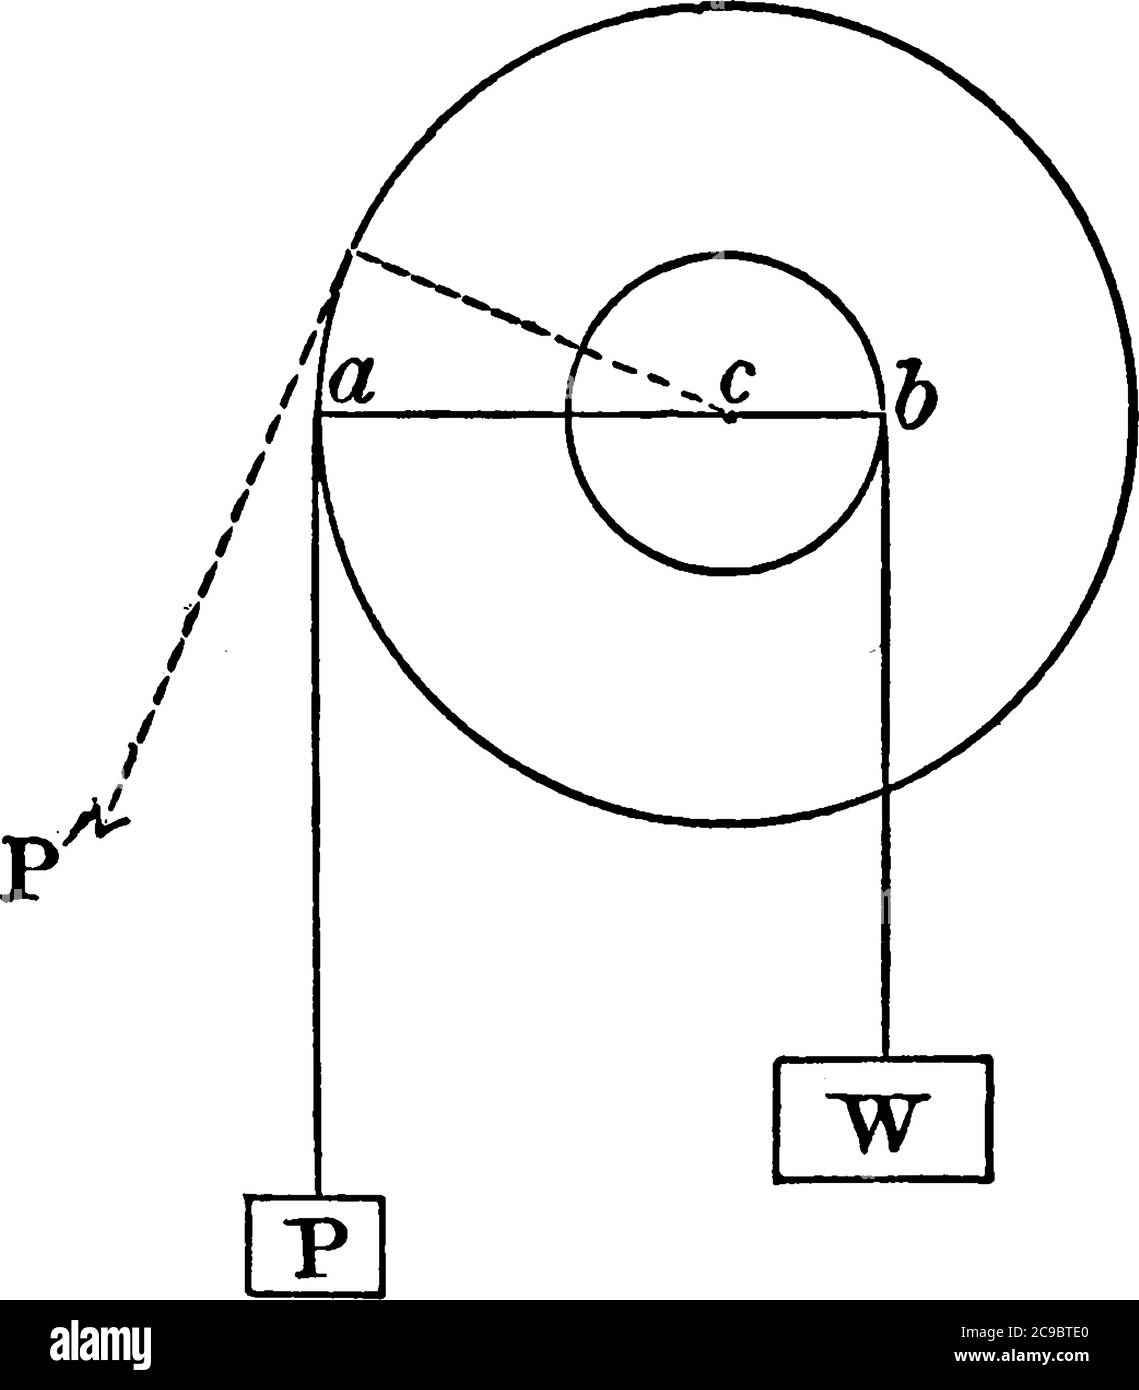 Roue et essieu, considéré comme un levier, le point d'appui est à l'axe commun, tandis que les bras du levier sont les rayons de la roue et de l'essieu, vint Illustration de Vecteur